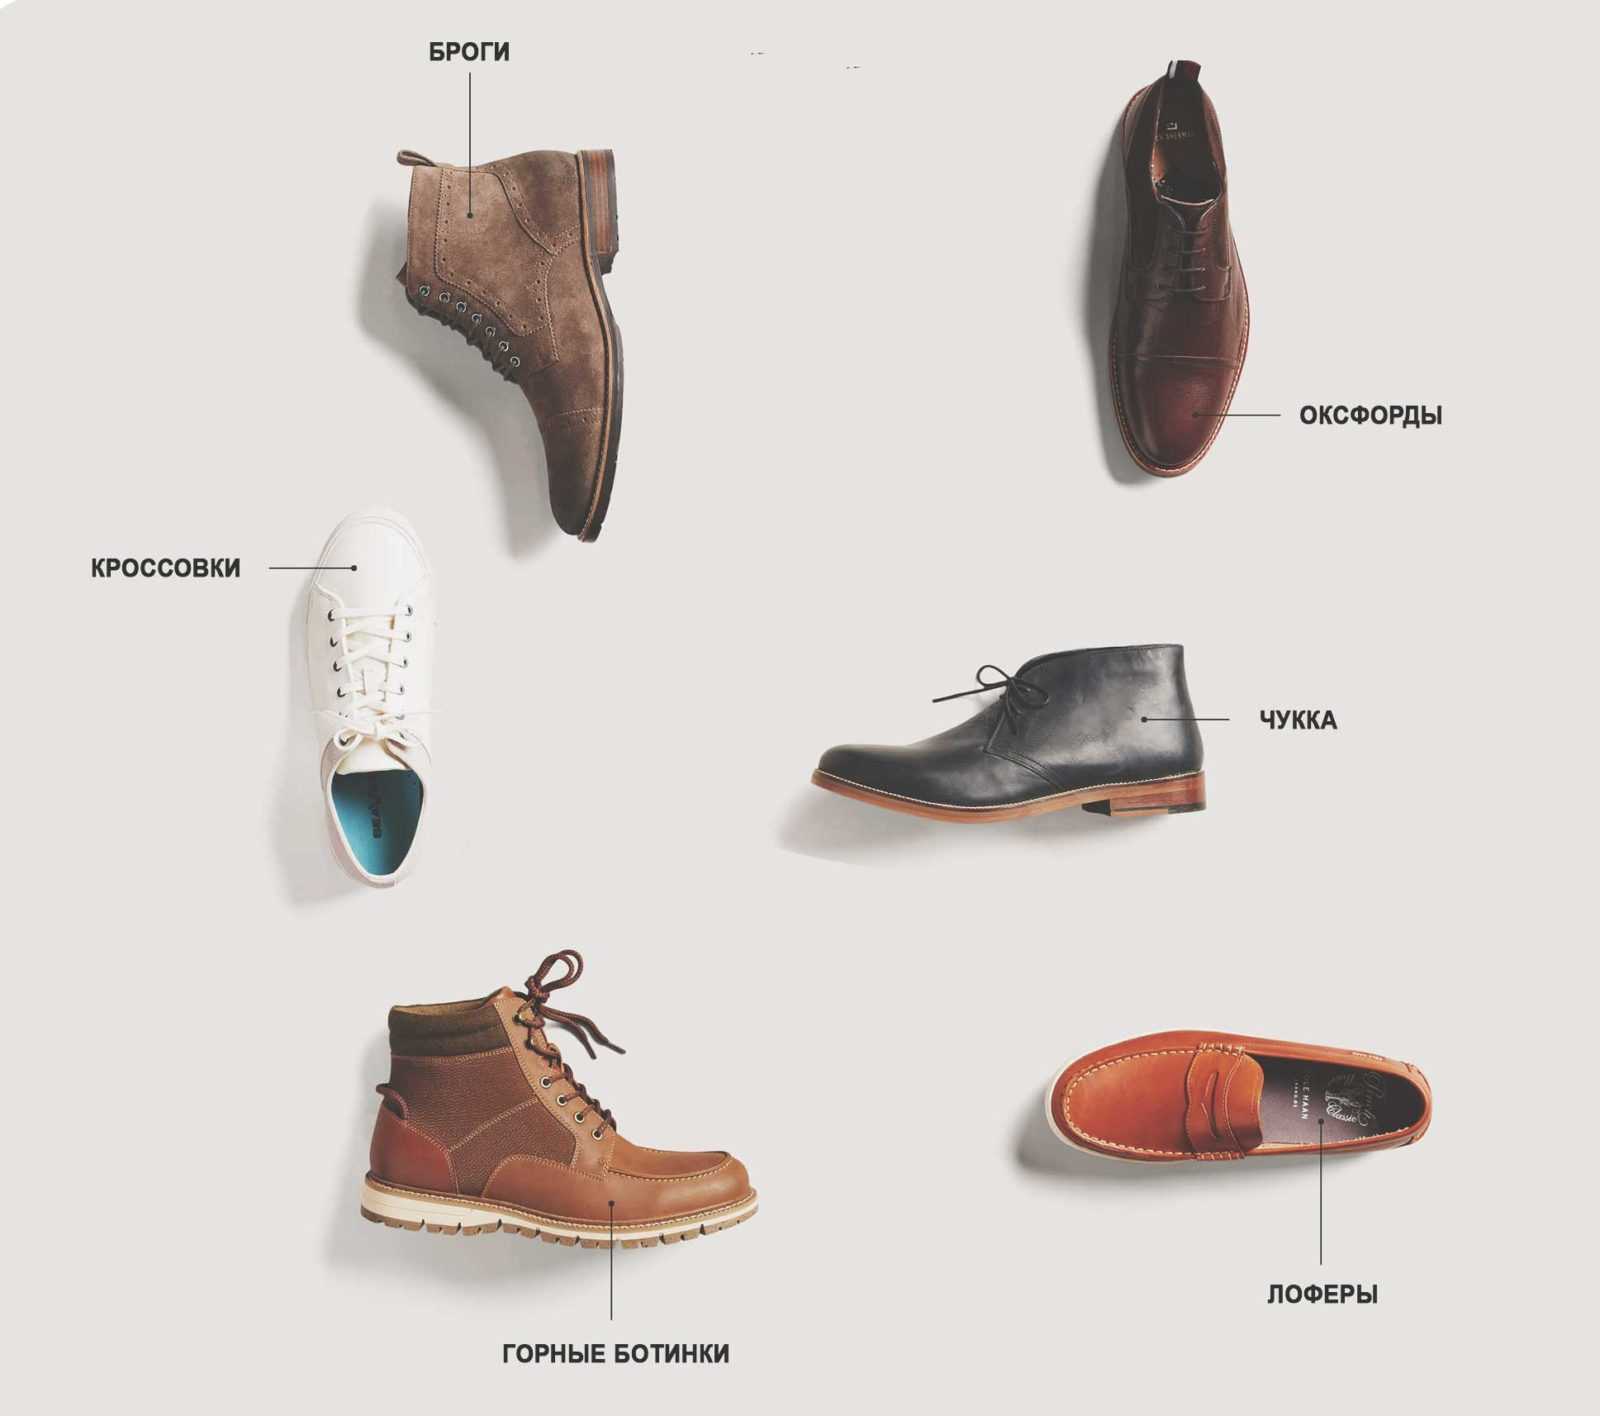 Обувь разновидность названия. Формы мужской обуви. Название мужских ботинок. Мужская обувь названия моделей. Классификация мужской обуви.